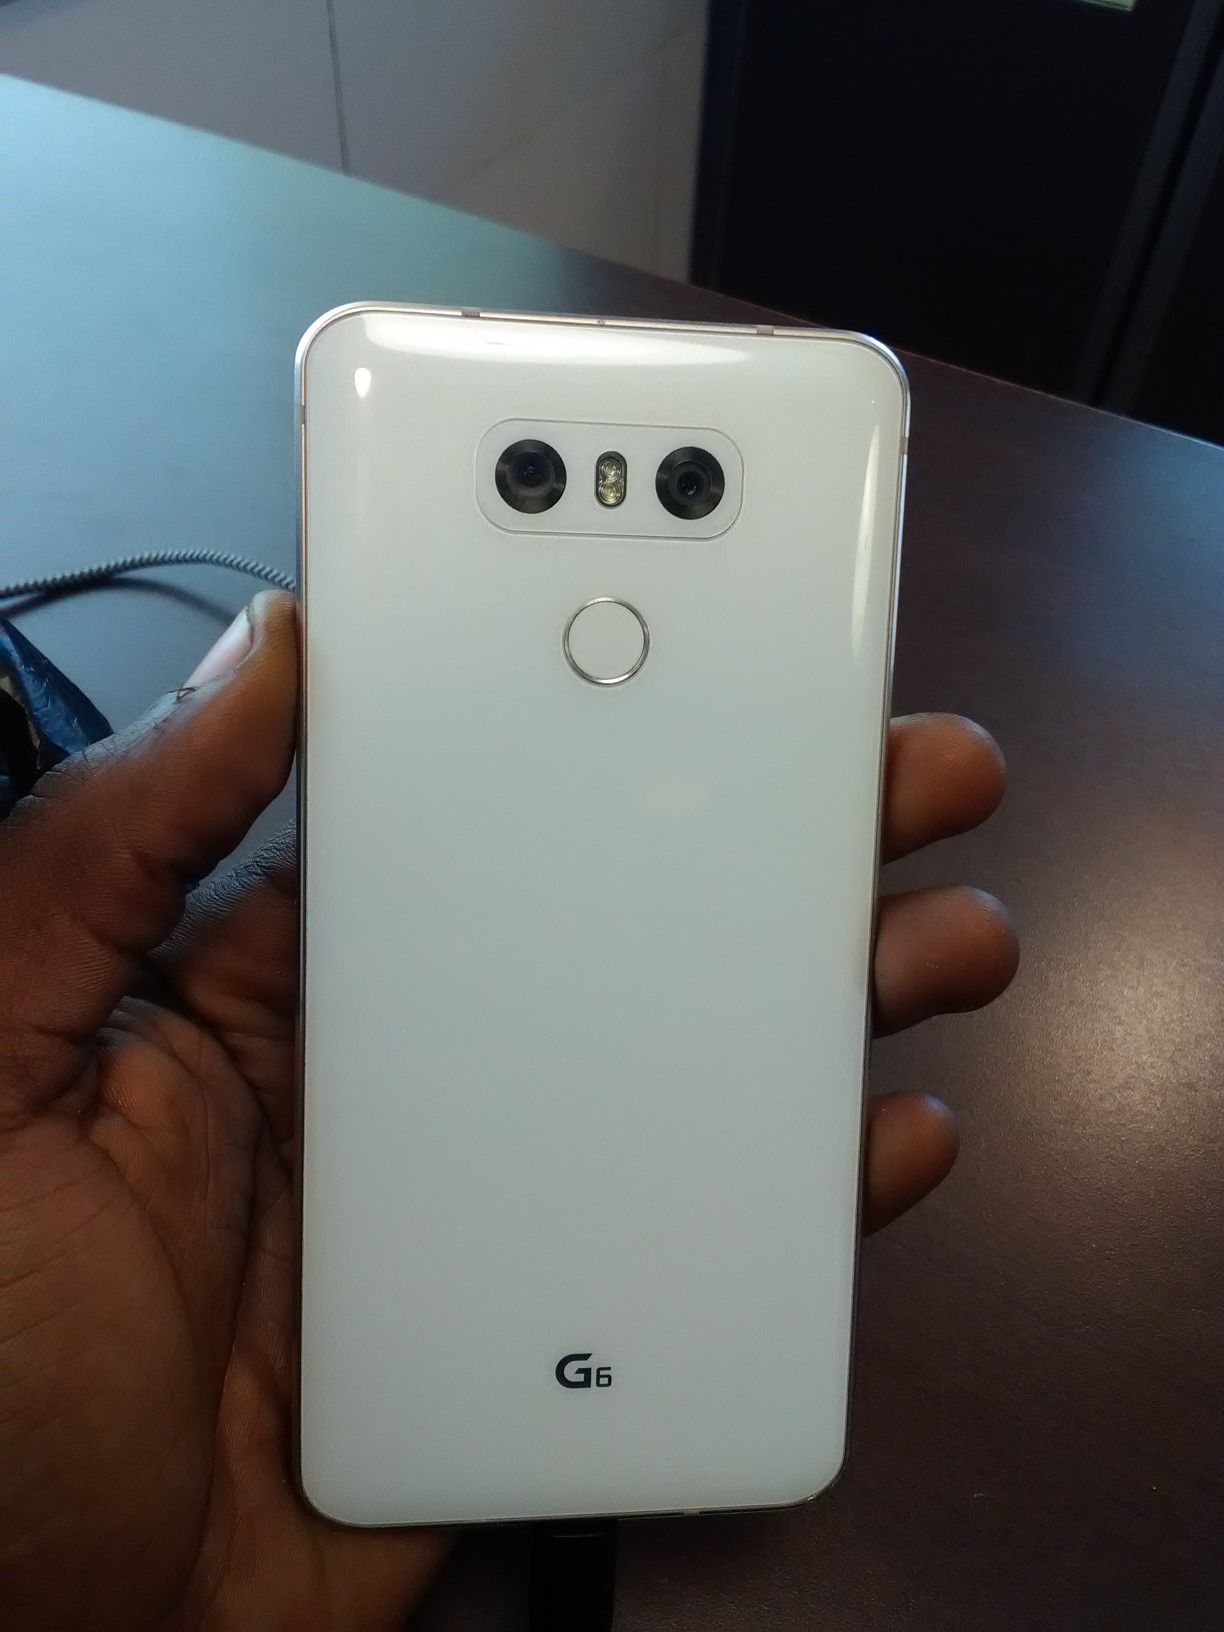 LG-G6 White & rose gold